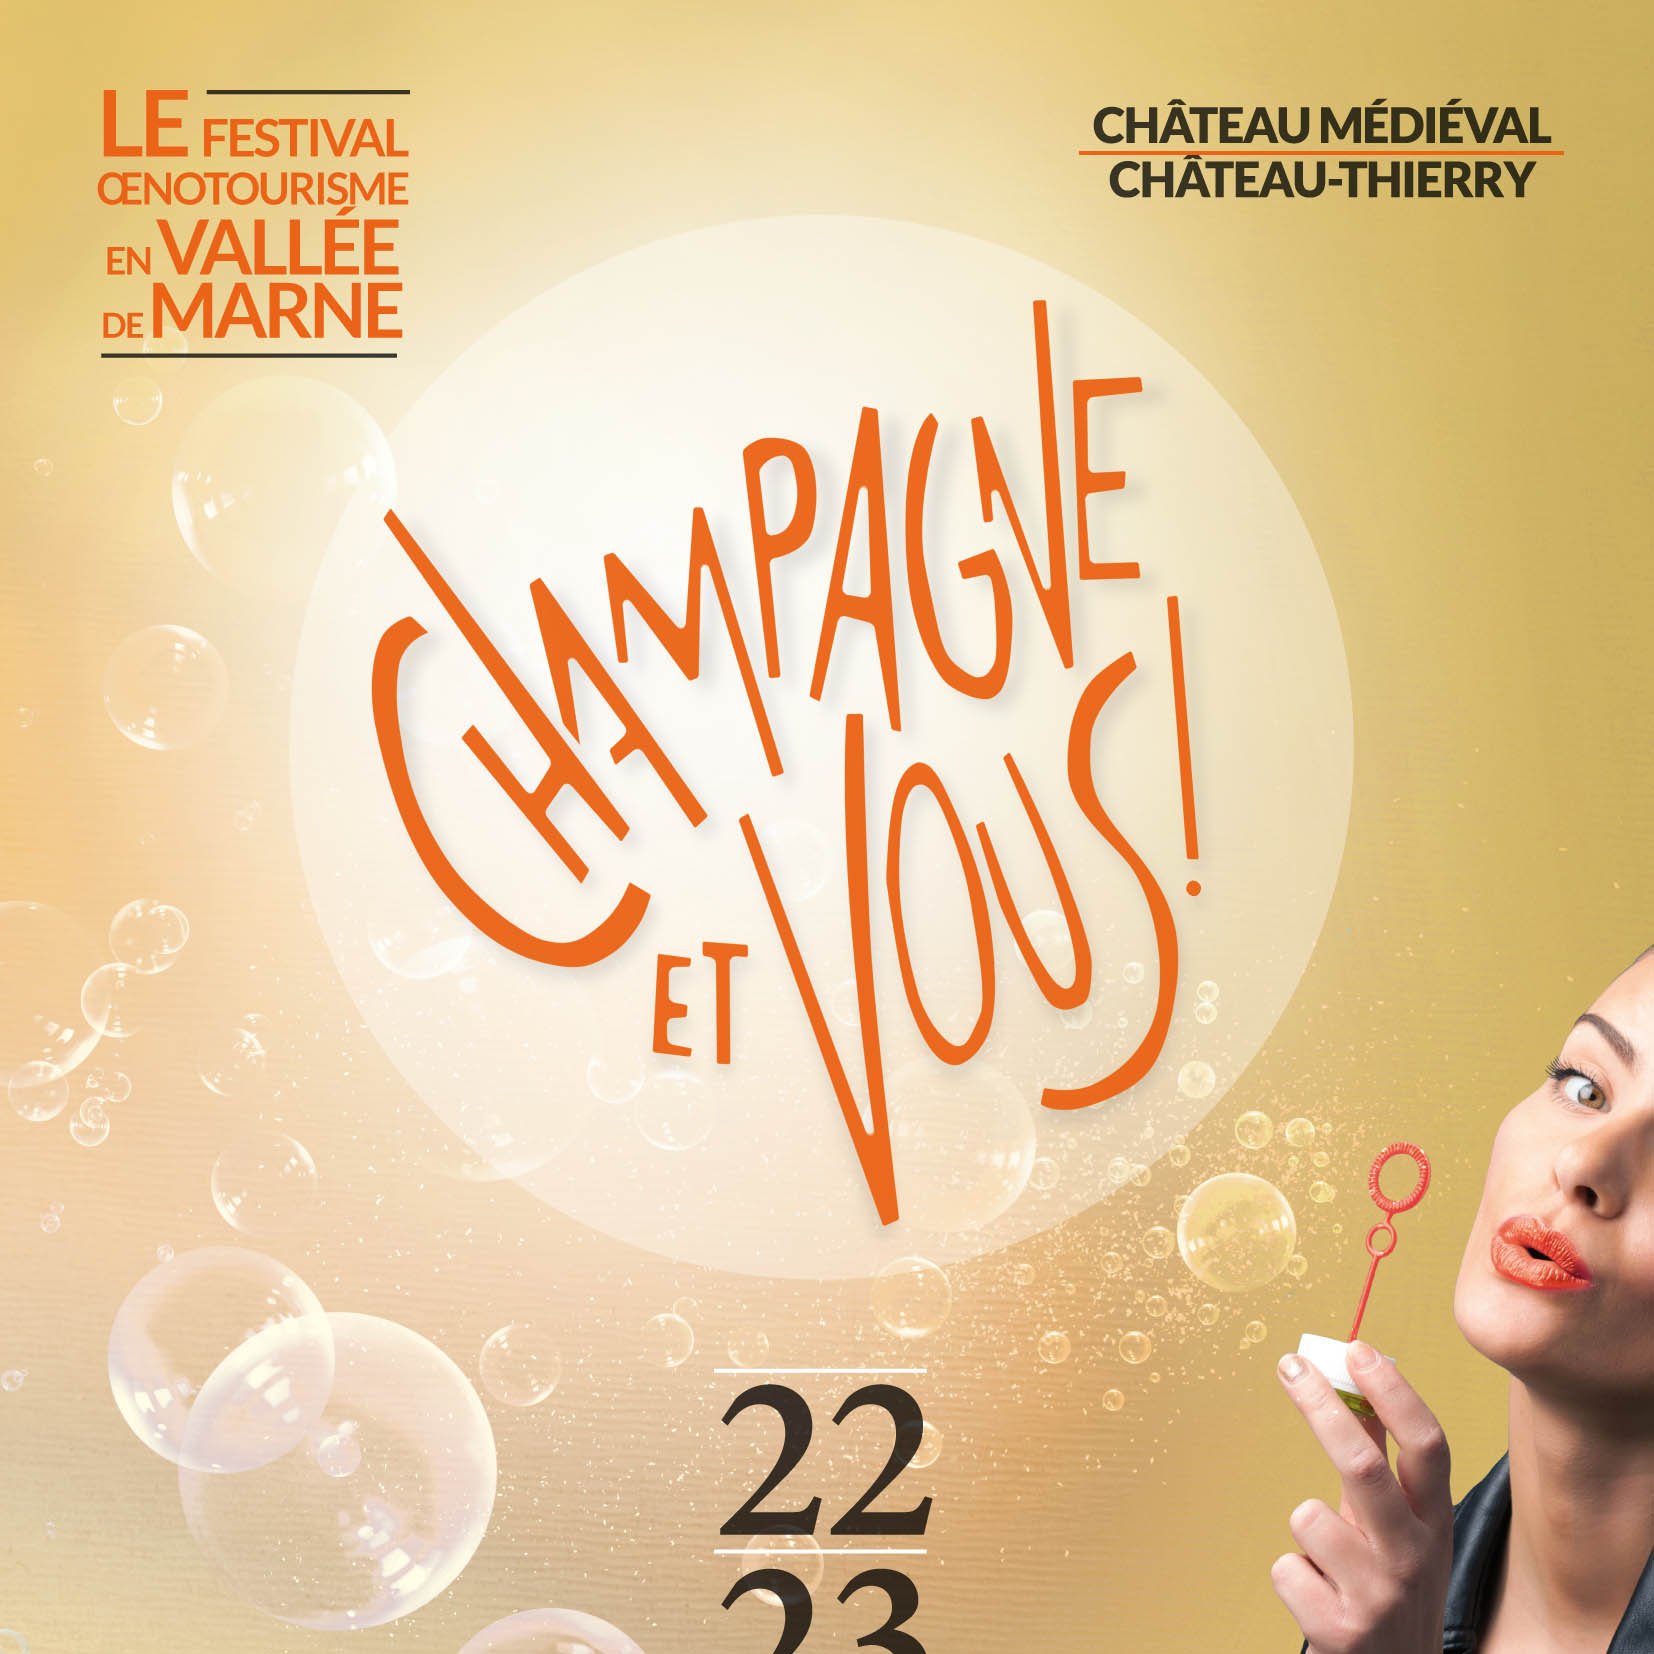 Champagne et Vous ! 2016 : la promotion des paysages, du patrimoine artistique et du vin du territoire © PETR UCCSA